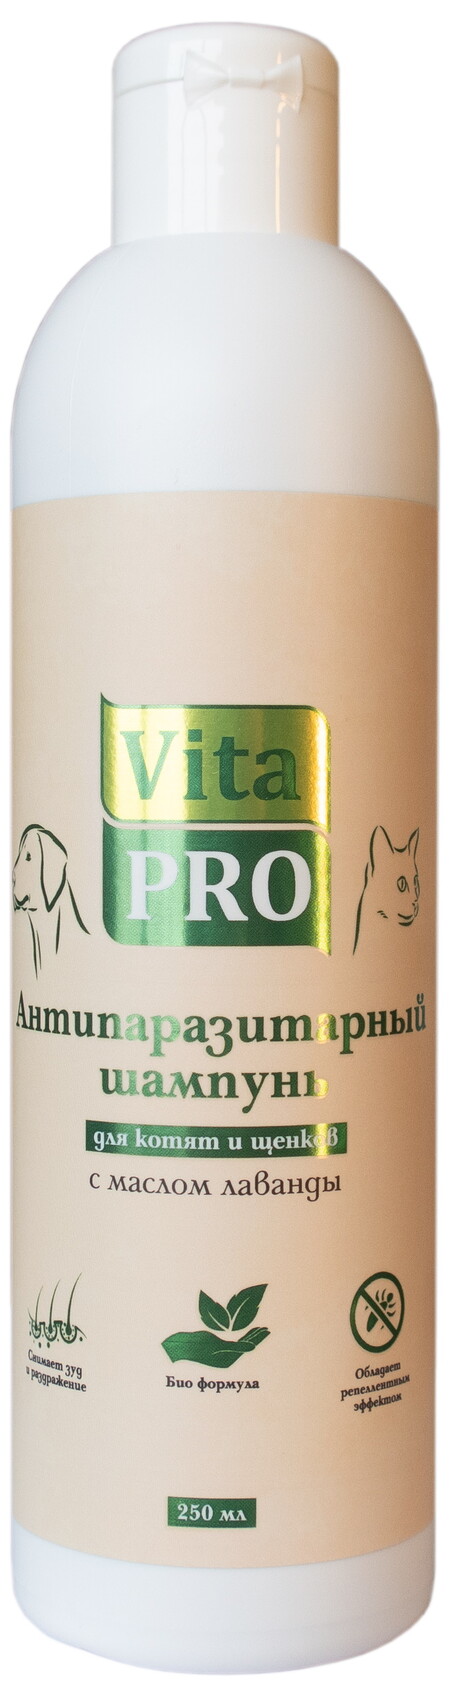 Vita Pro 250 мл биошампунь для котят и щенков антипаразитарный с маслом лаванды